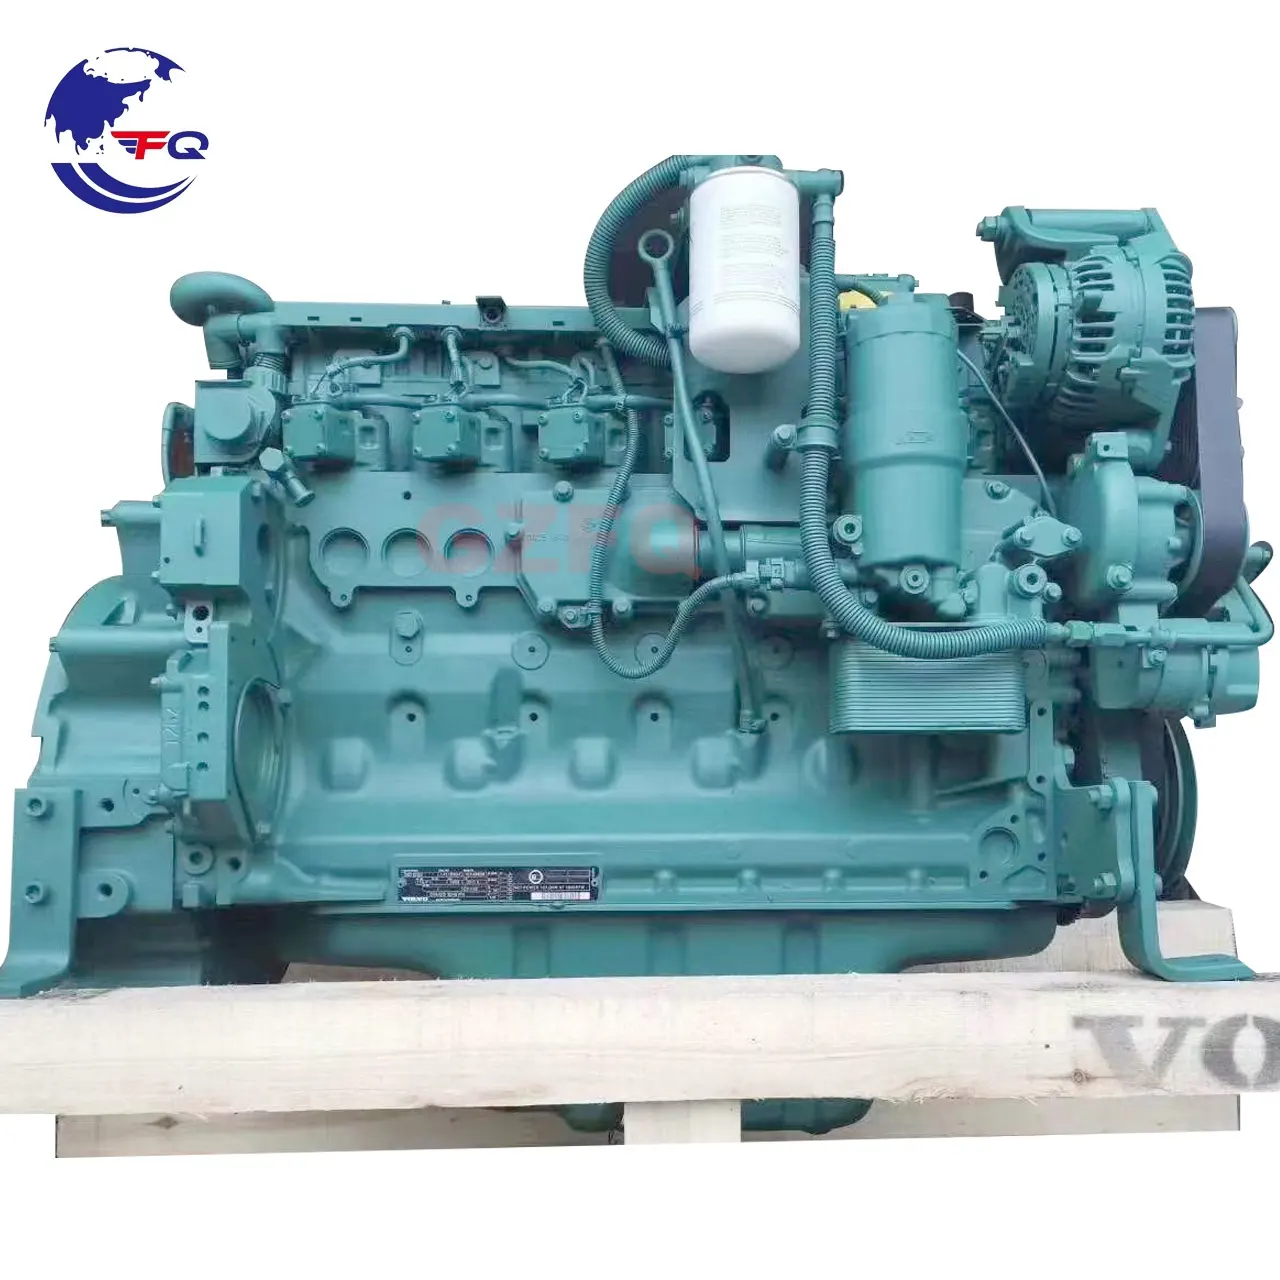 Original new Excavator engine Complete D6D Engine Assembly for VOLVO D6D excavator engine